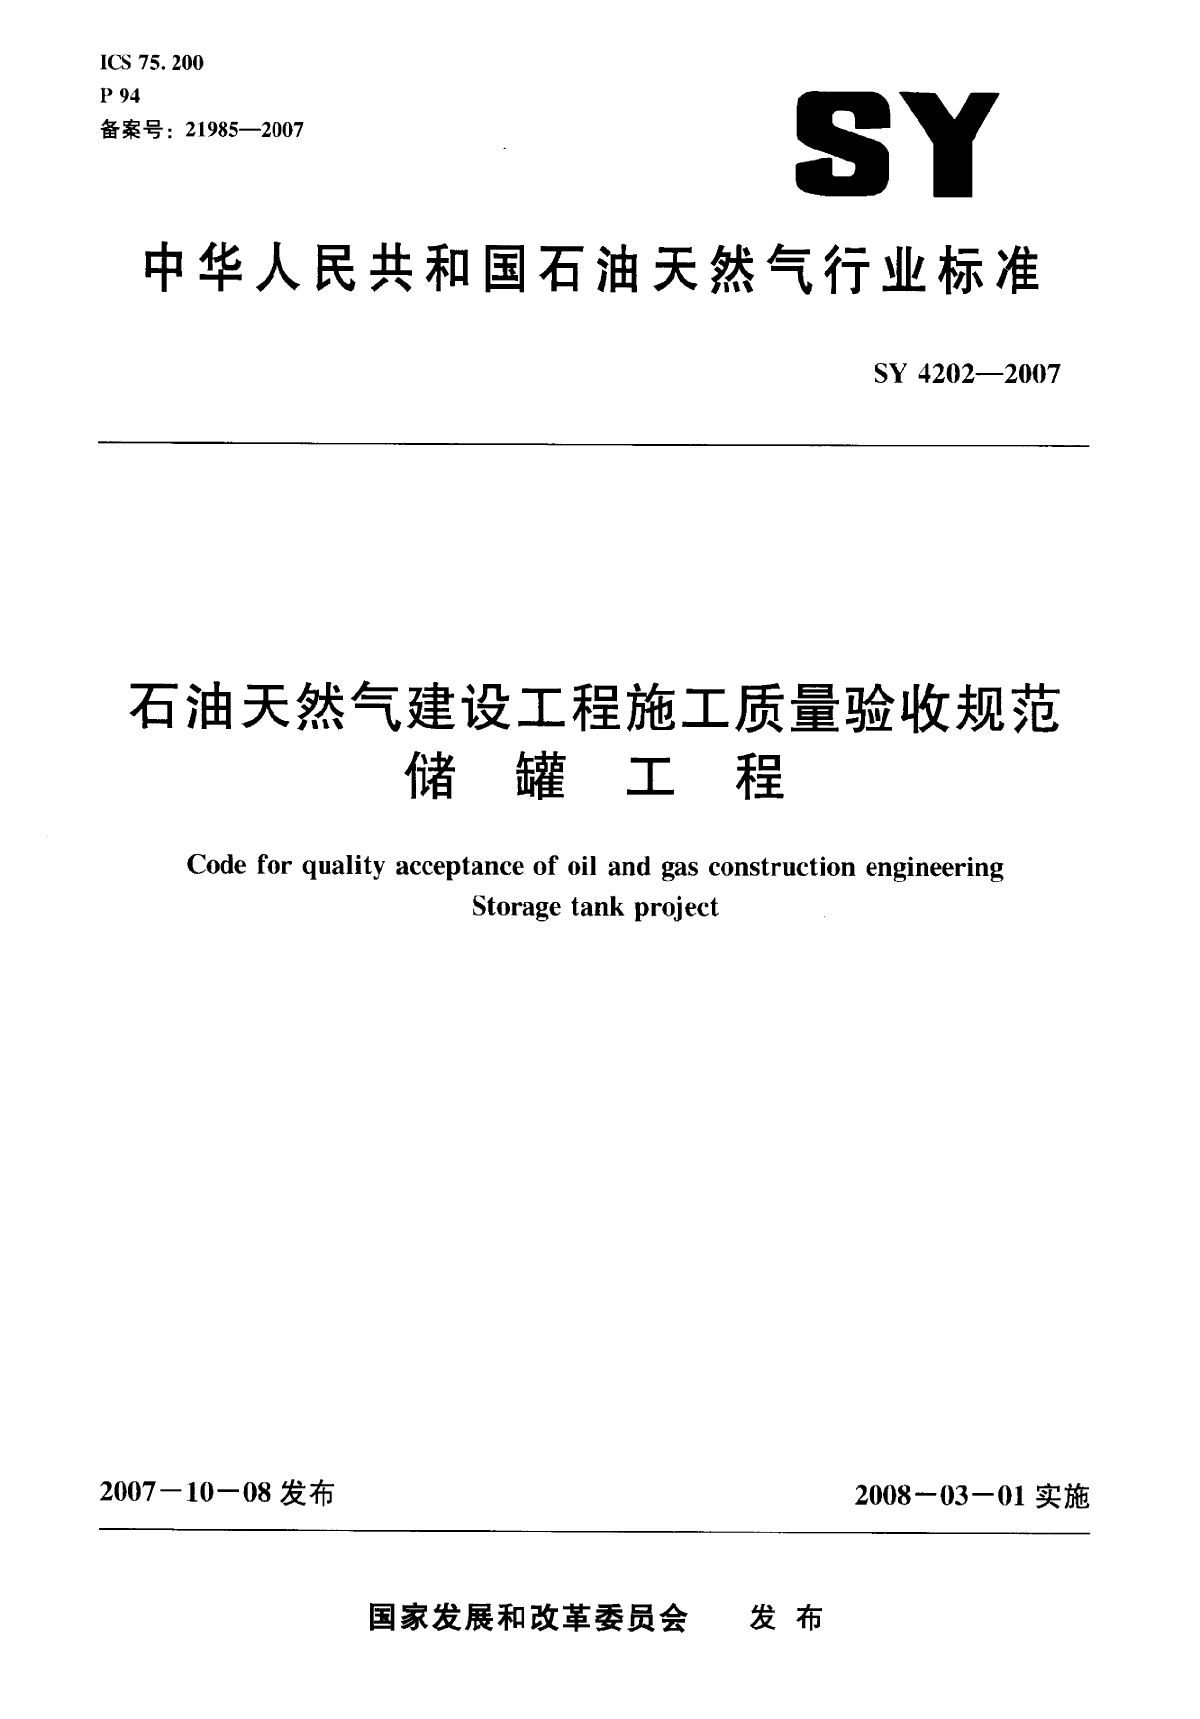 储罐工程SY4202-2007.pdf